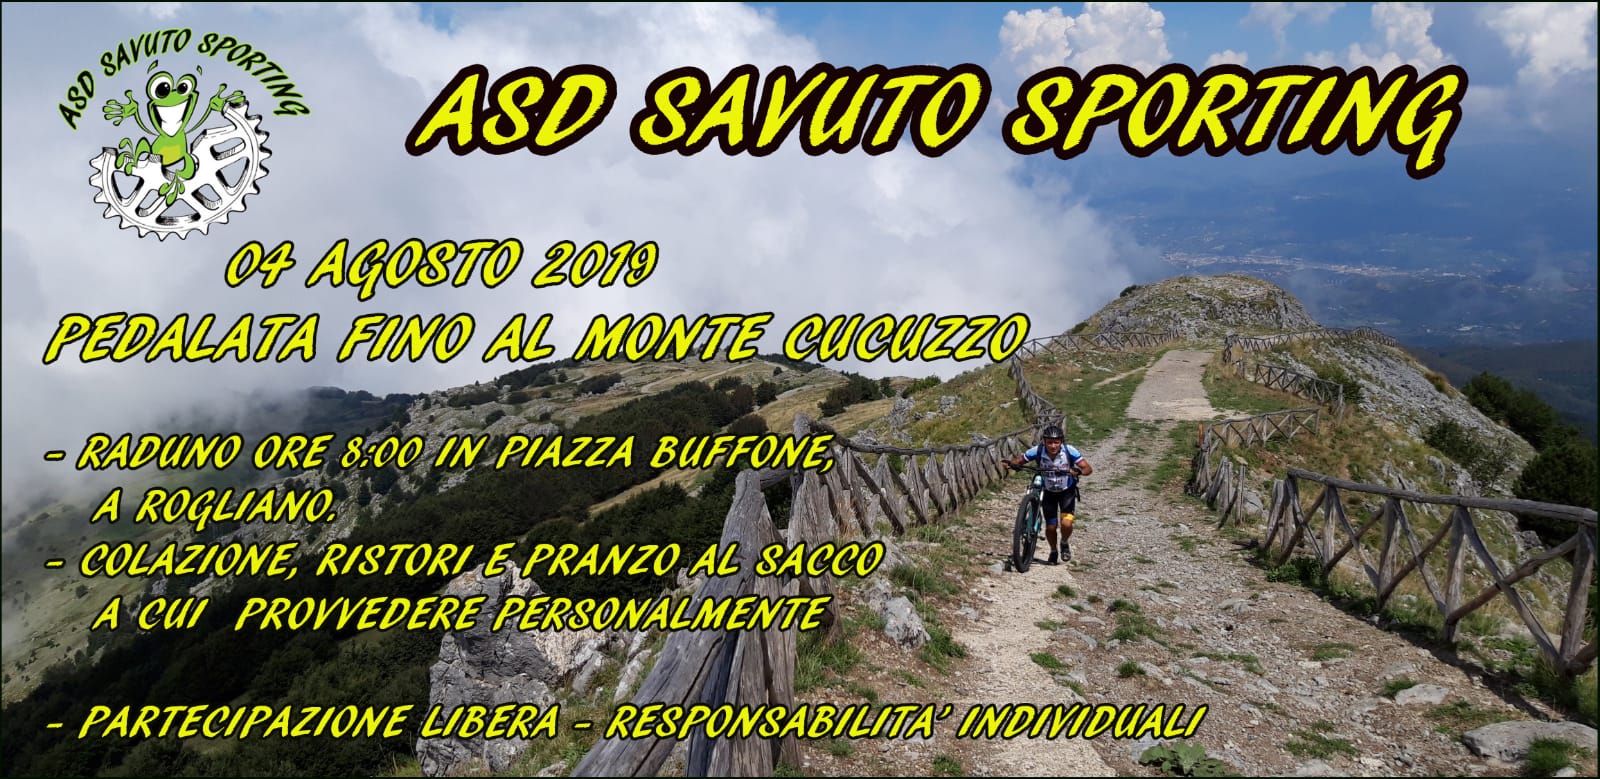 Savuto Sporting - Pedalata monte Cocuzzo